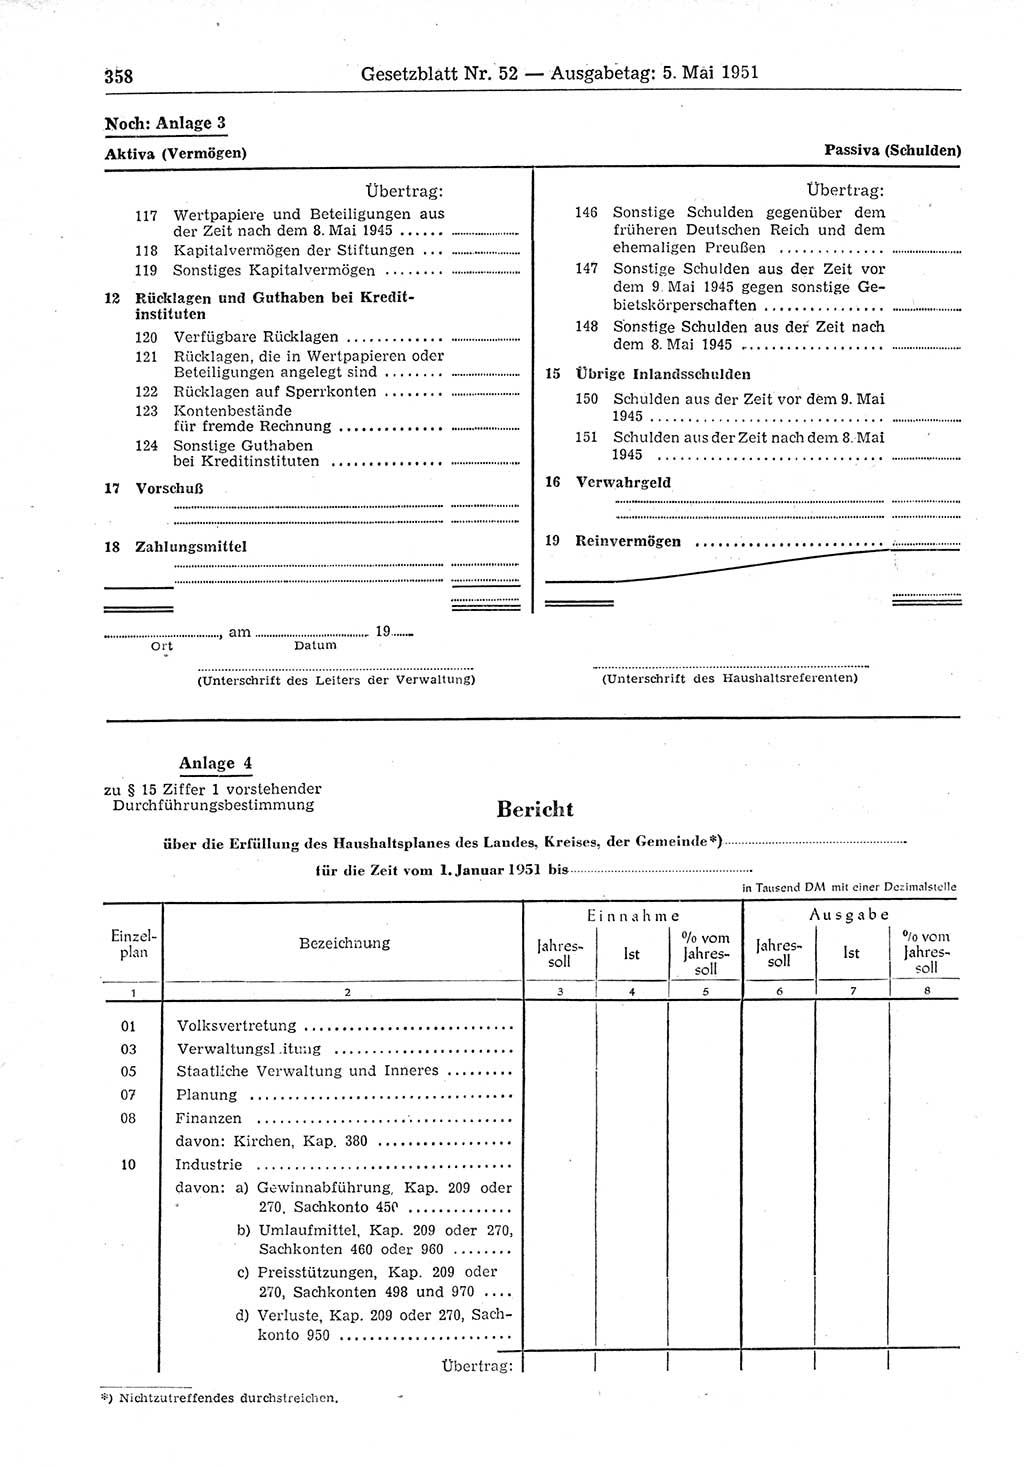 Gesetzblatt (GBl.) der Deutschen Demokratischen Republik (DDR) 1951, Seite 358 (GBl. DDR 1951, S. 358)